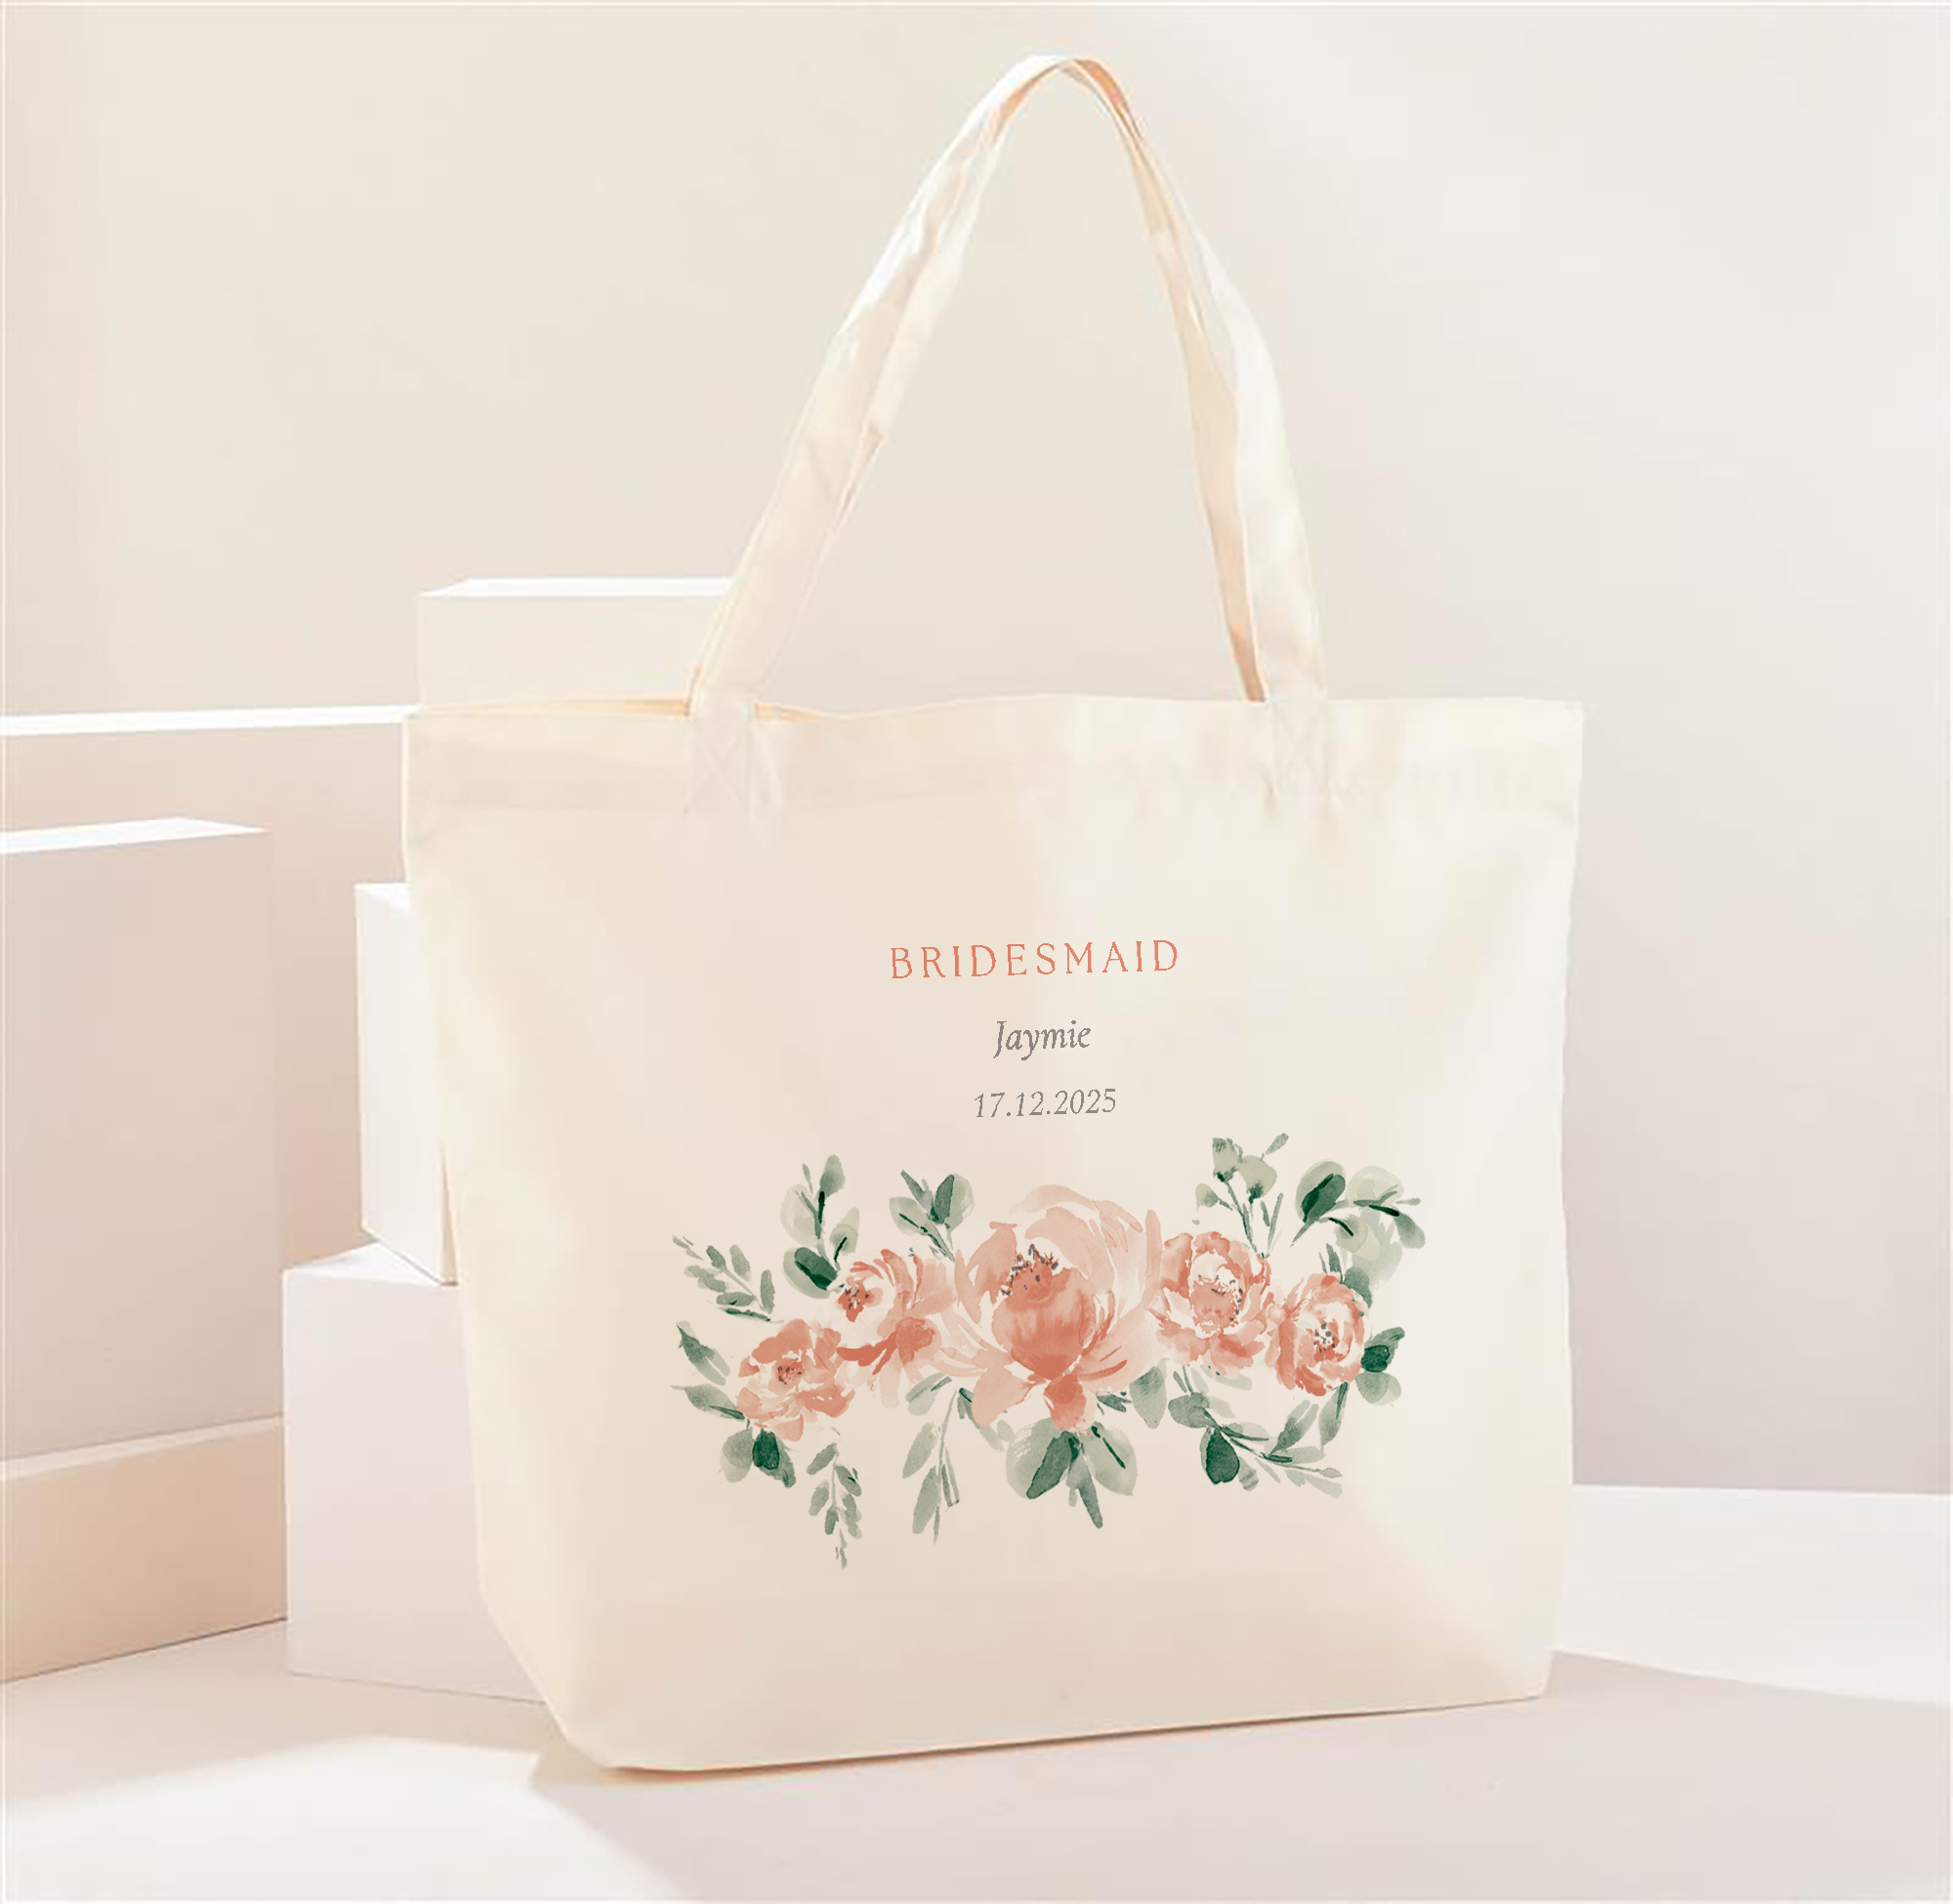 Personalised Bridesmaid Floral Design Tote Bag